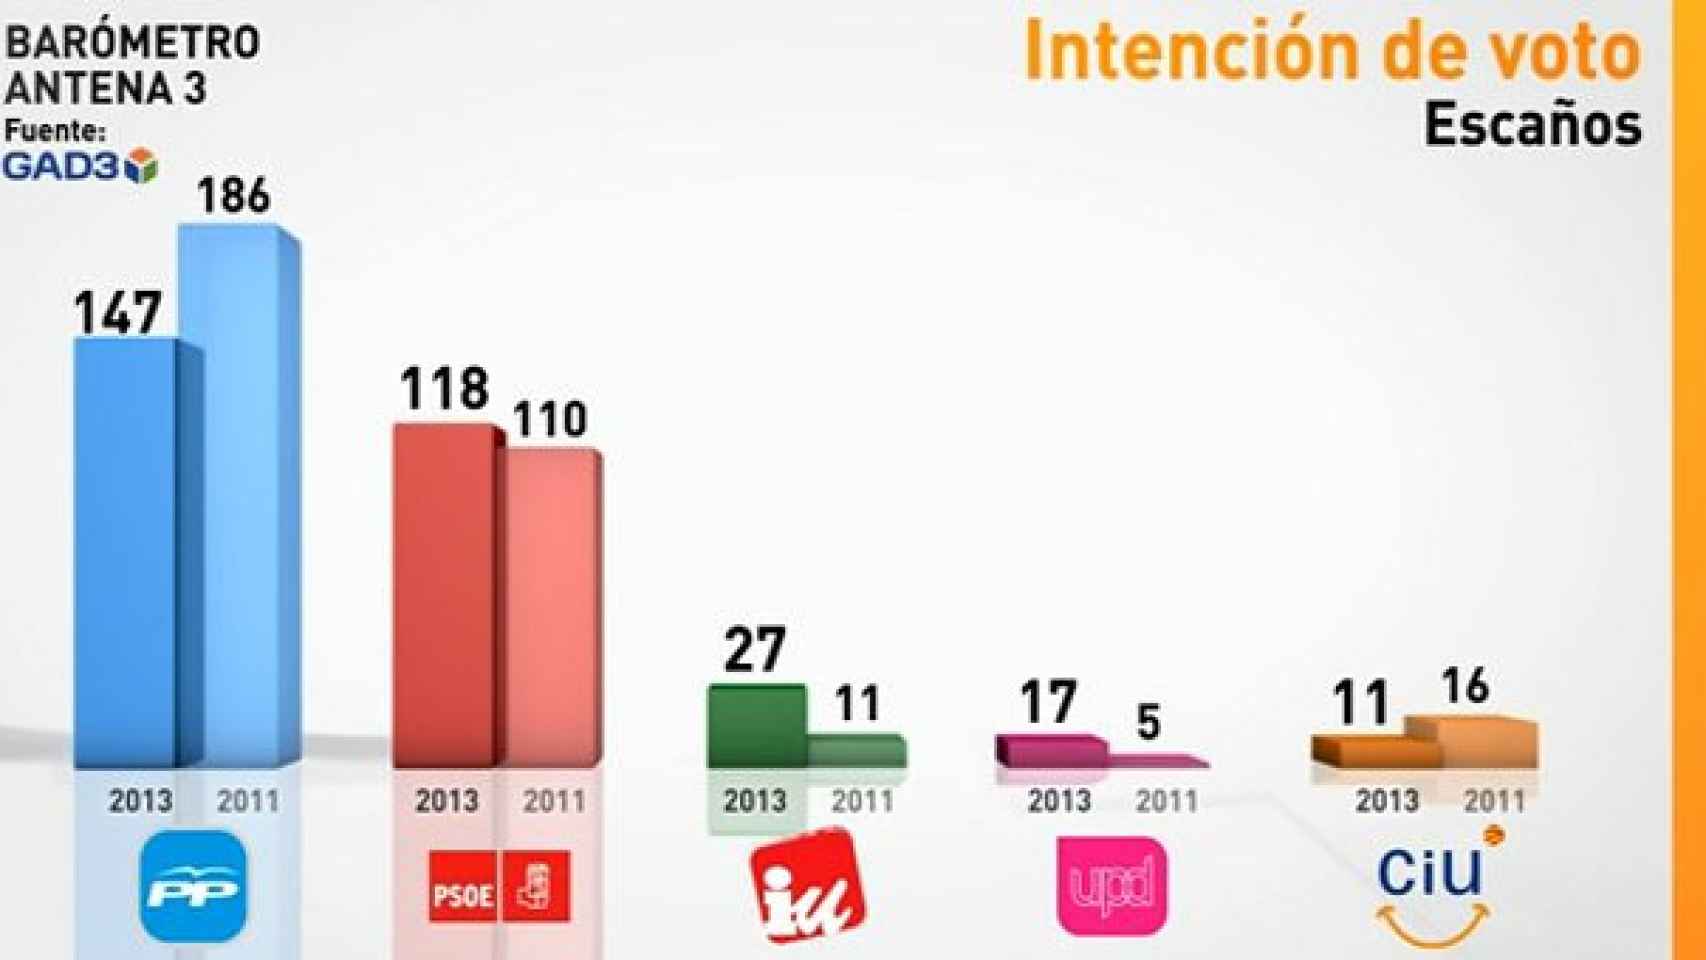 Sondeo electoral de Antena 3, en septiembre de 2013